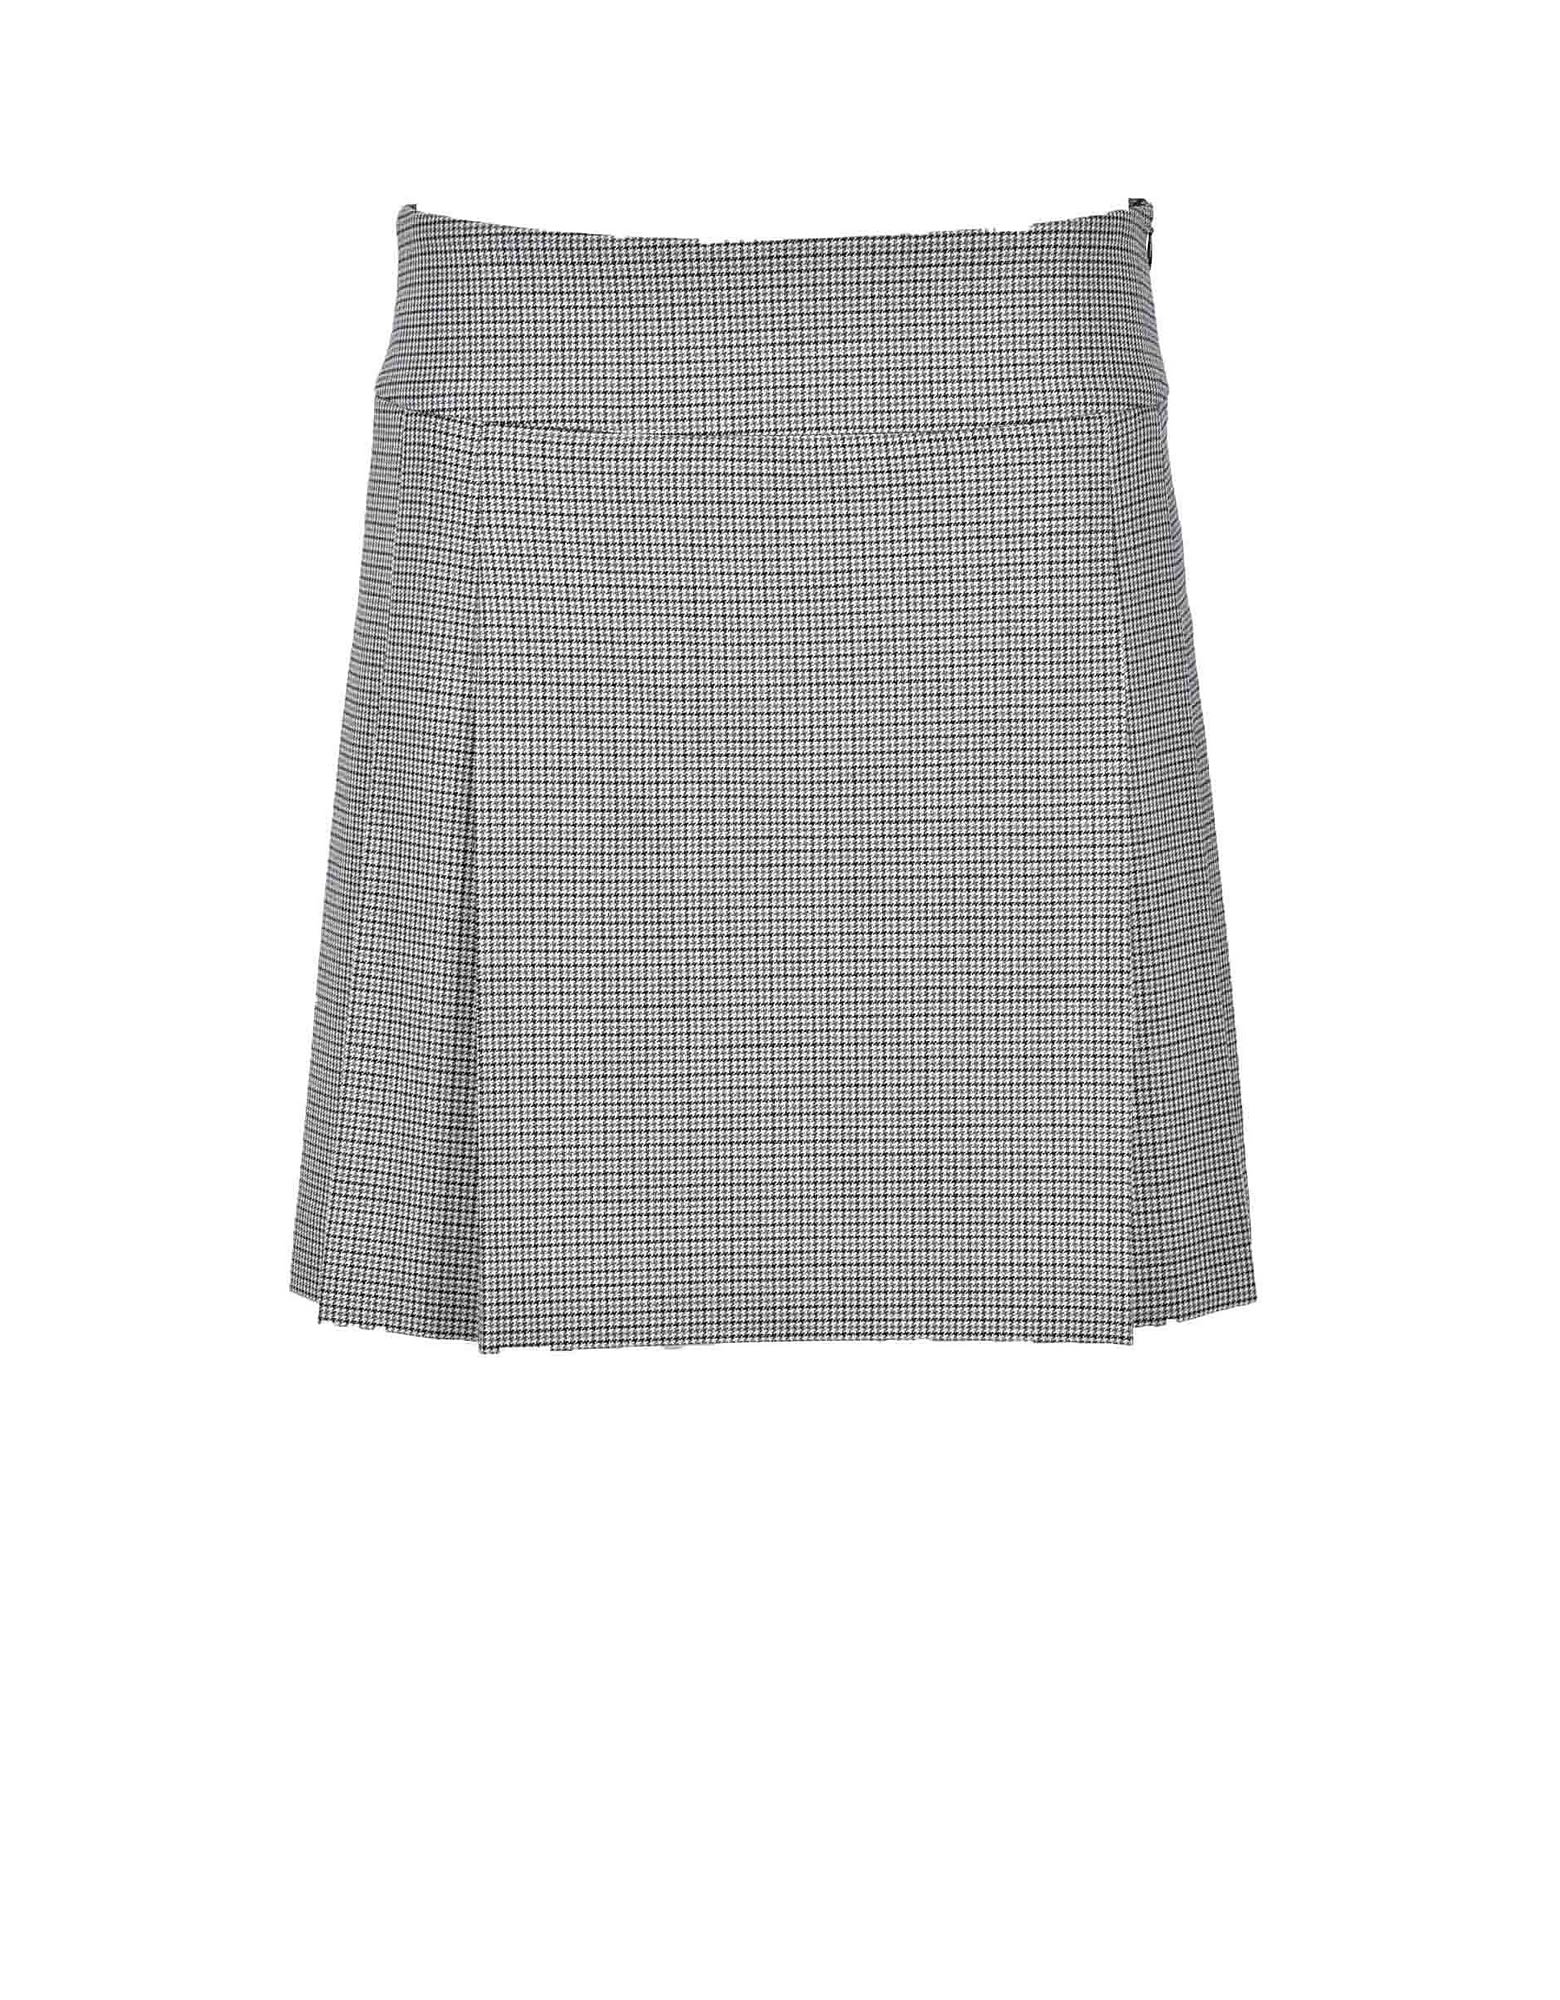 Moschino Womens Black / Gray Skirt